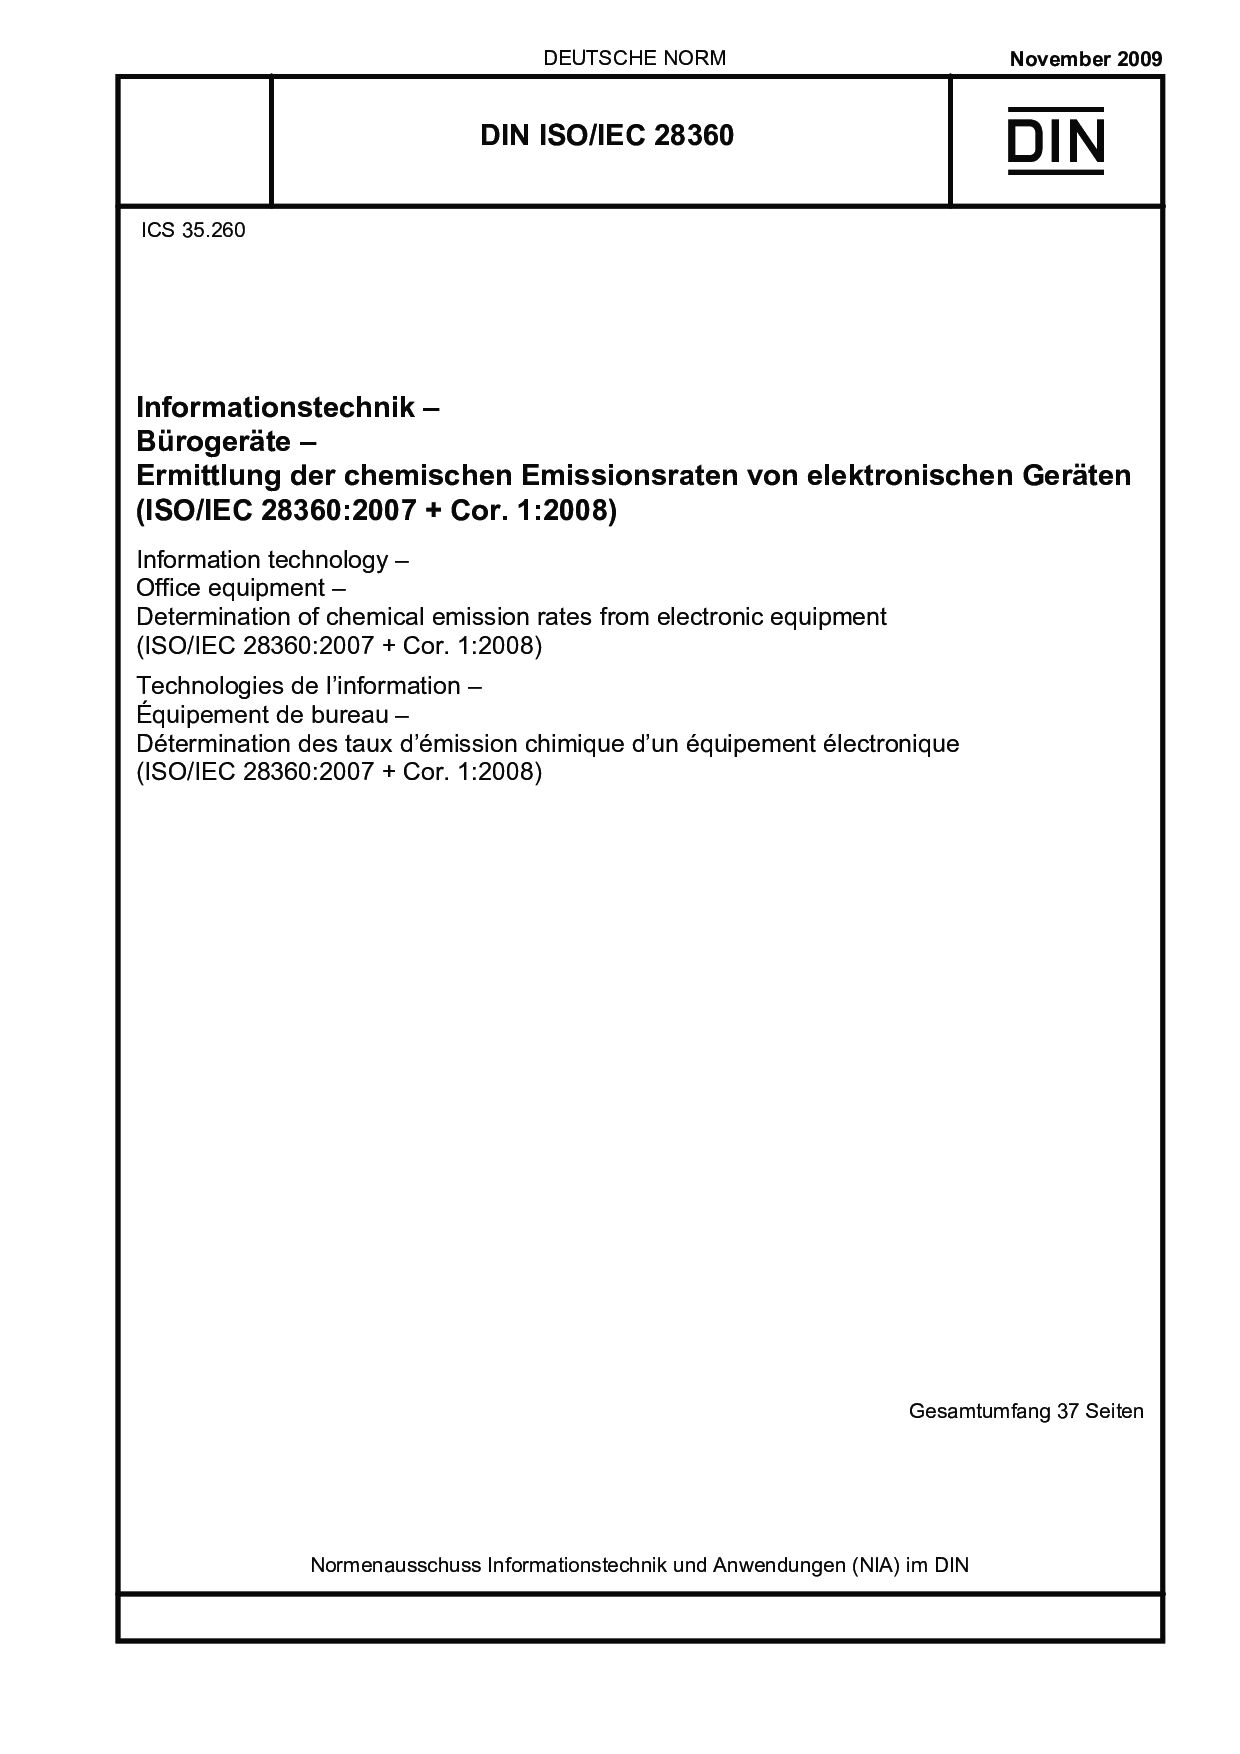 DIN ISO/IEC 28360:2009封面图